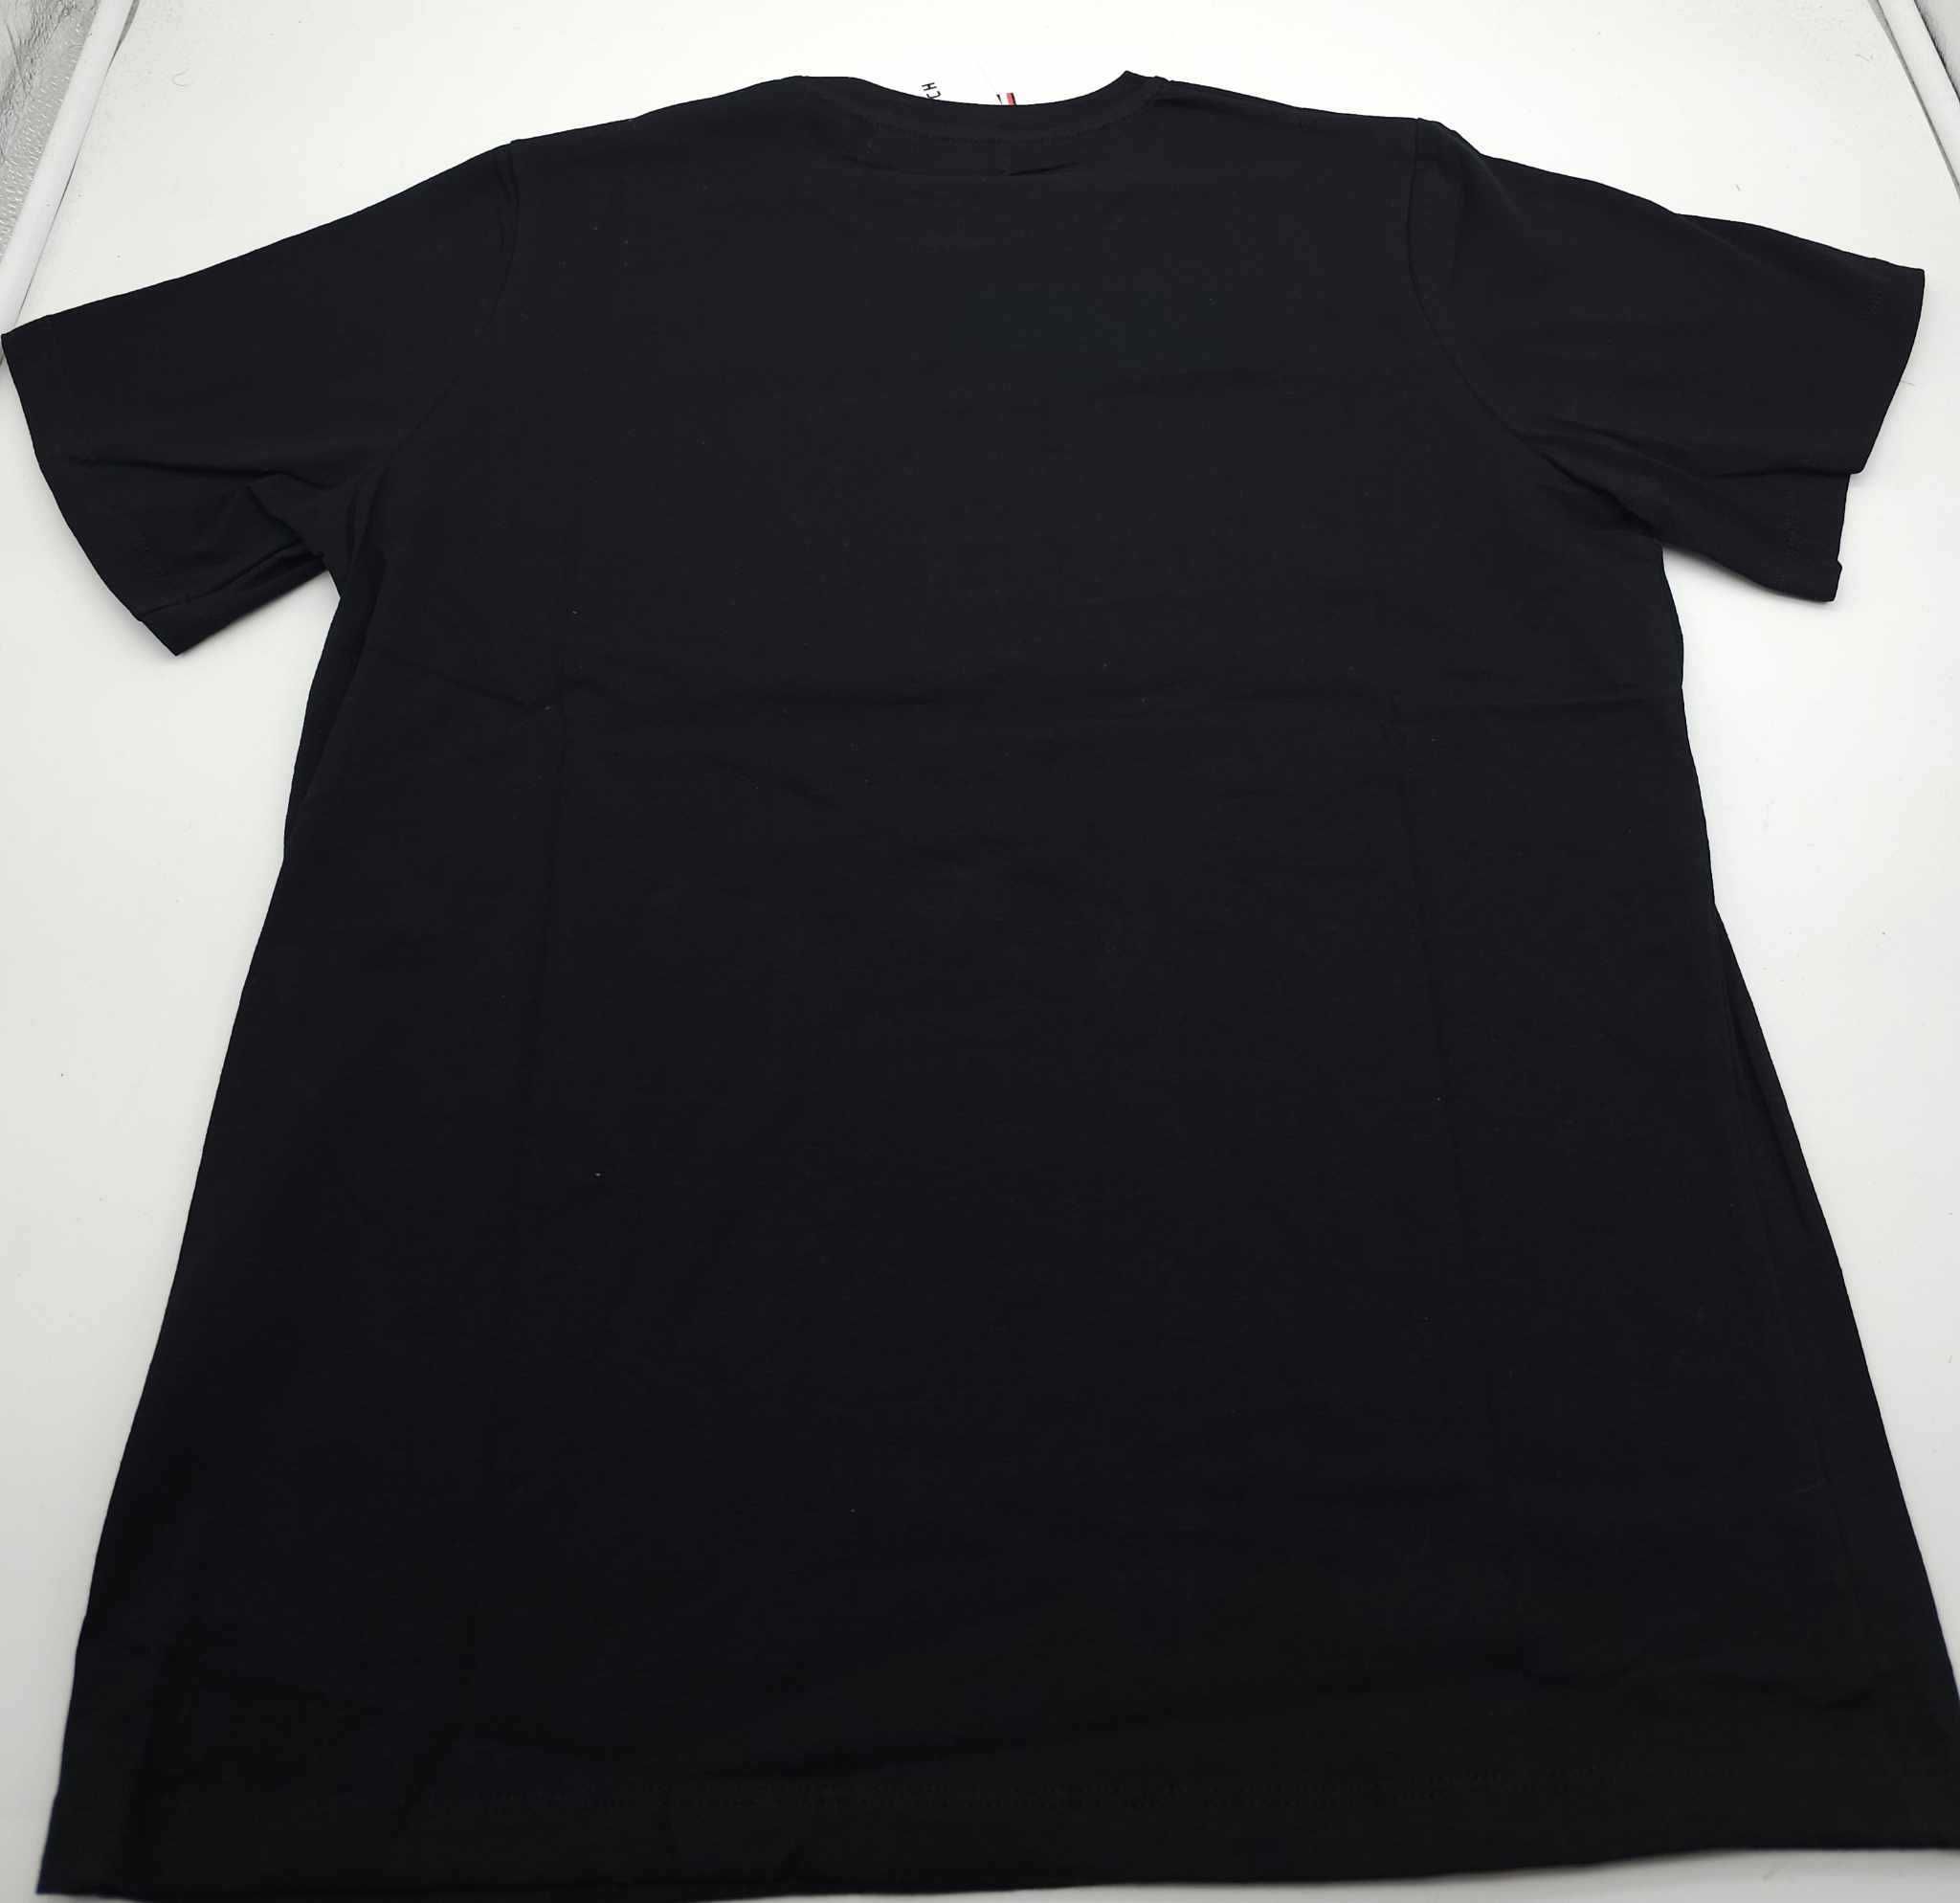 T-shirt novo modelo preta, bordada